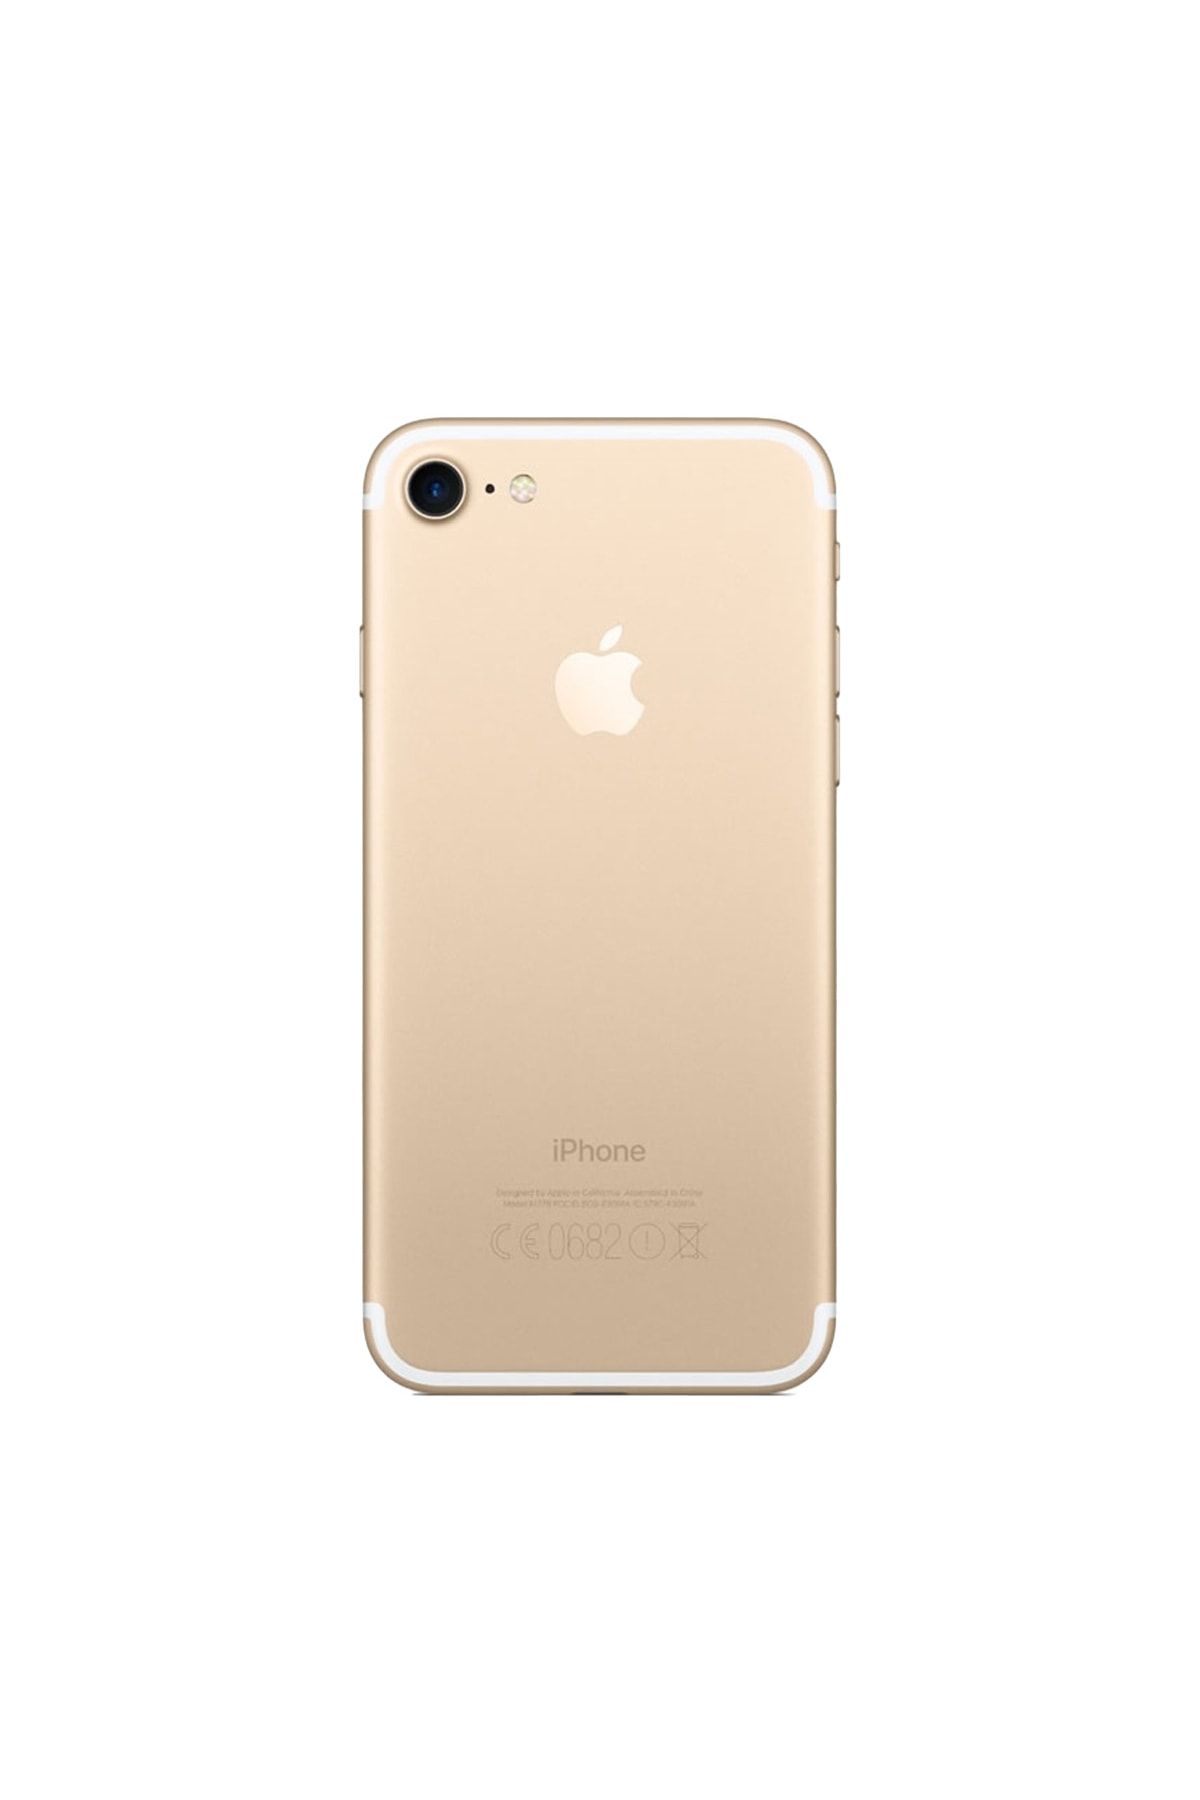 Apple Yenilenmiş iPhone 7 32 GB B Kalite